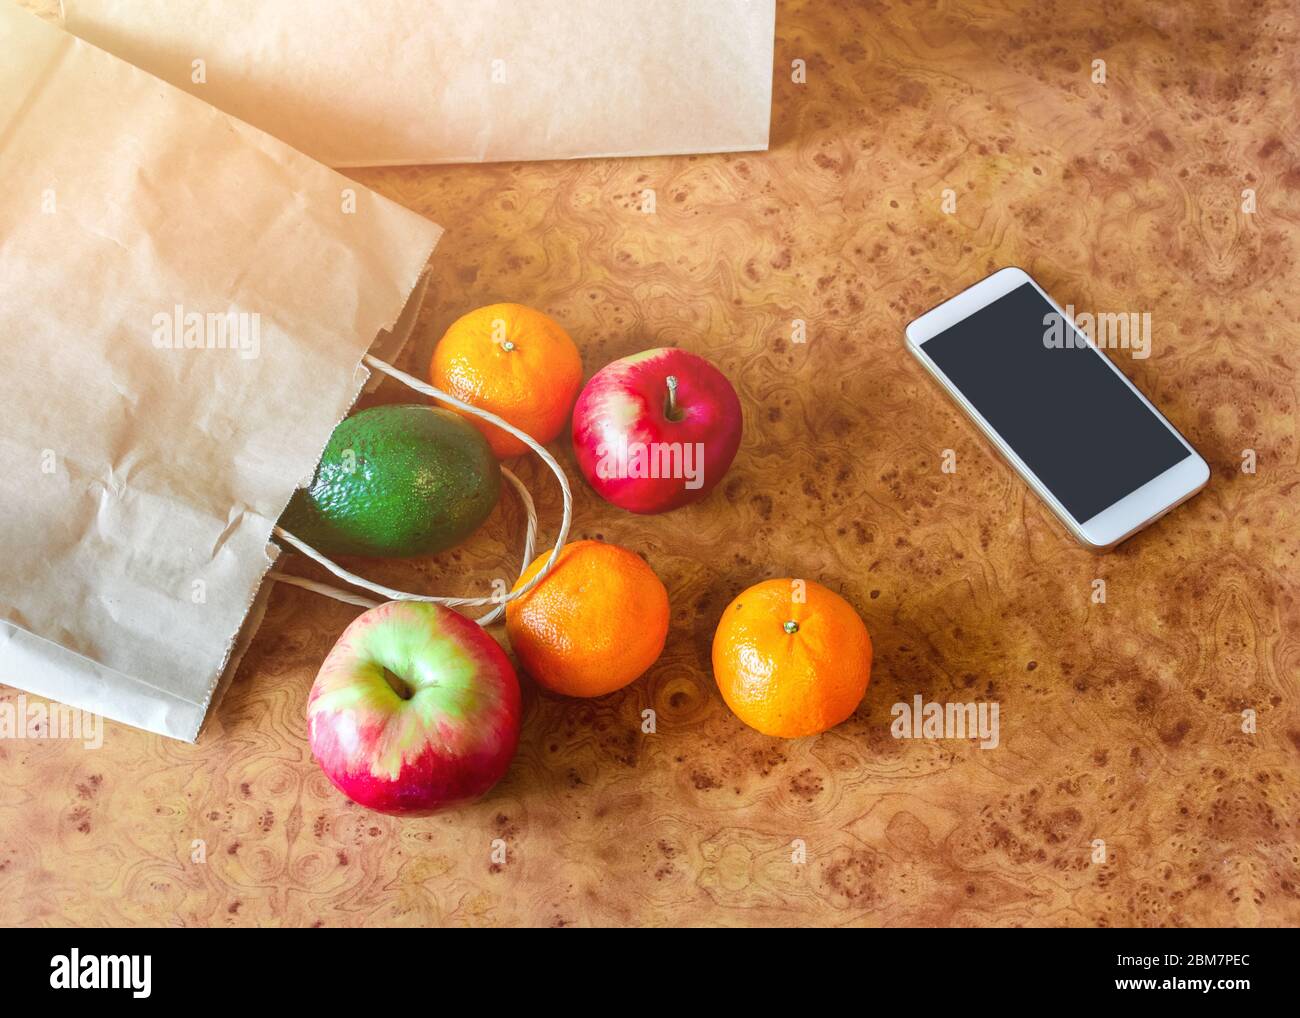 Papiertüten, frisches Gemüse und Obst neben einem Mobiltelefon auf dem Küchentisch. Online-Shopping und kontaktloses Lieferkonzept. Stockfoto